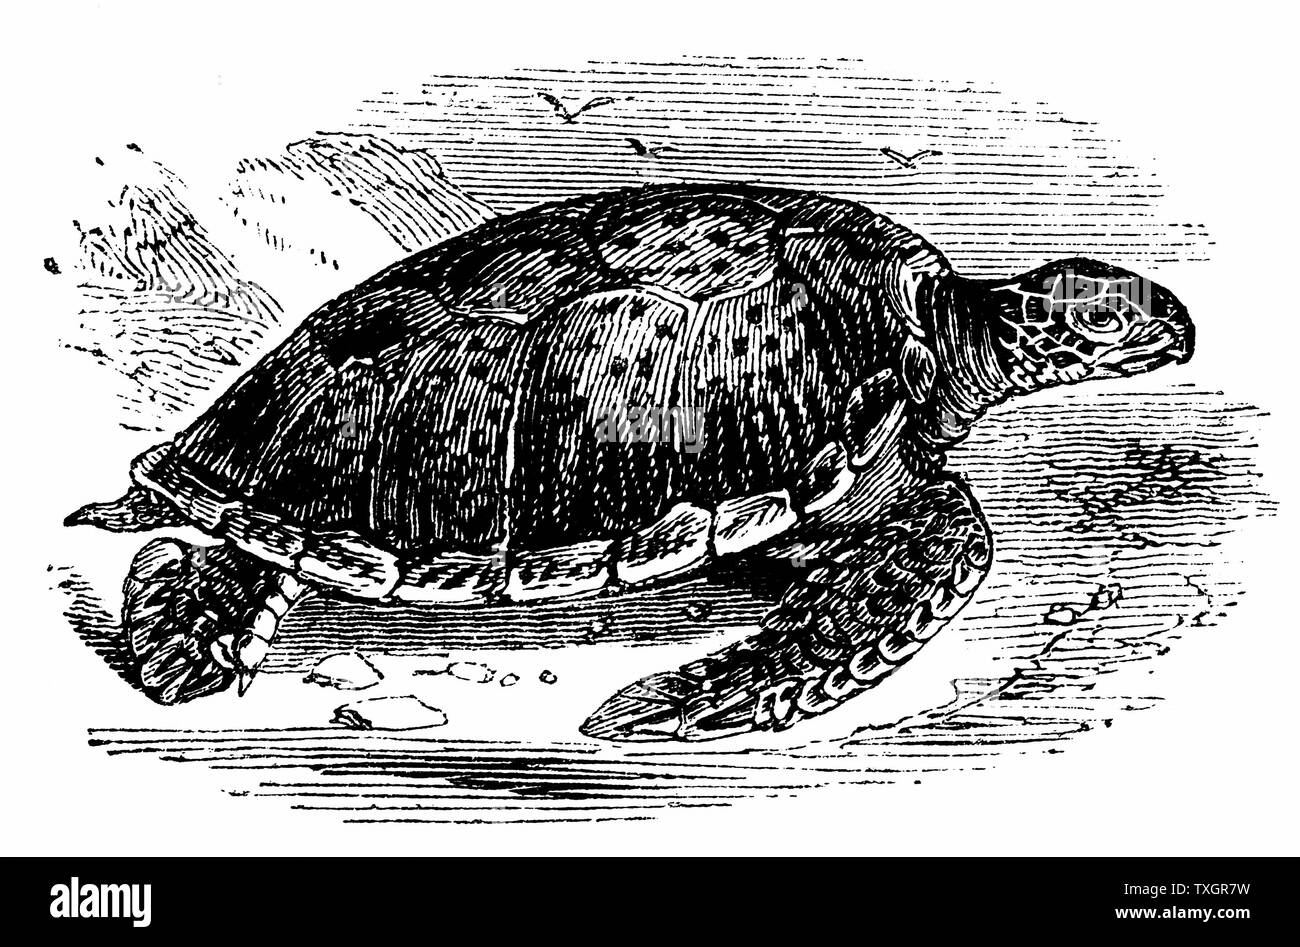 La tortue verte (Chelonia mydas) - comestibles - la viande de tortue très apprécié. Les tortues comestibles importés vivants en Europe comme une table de délicatesse. c.1890 la gravure sur bois Banque D'Images